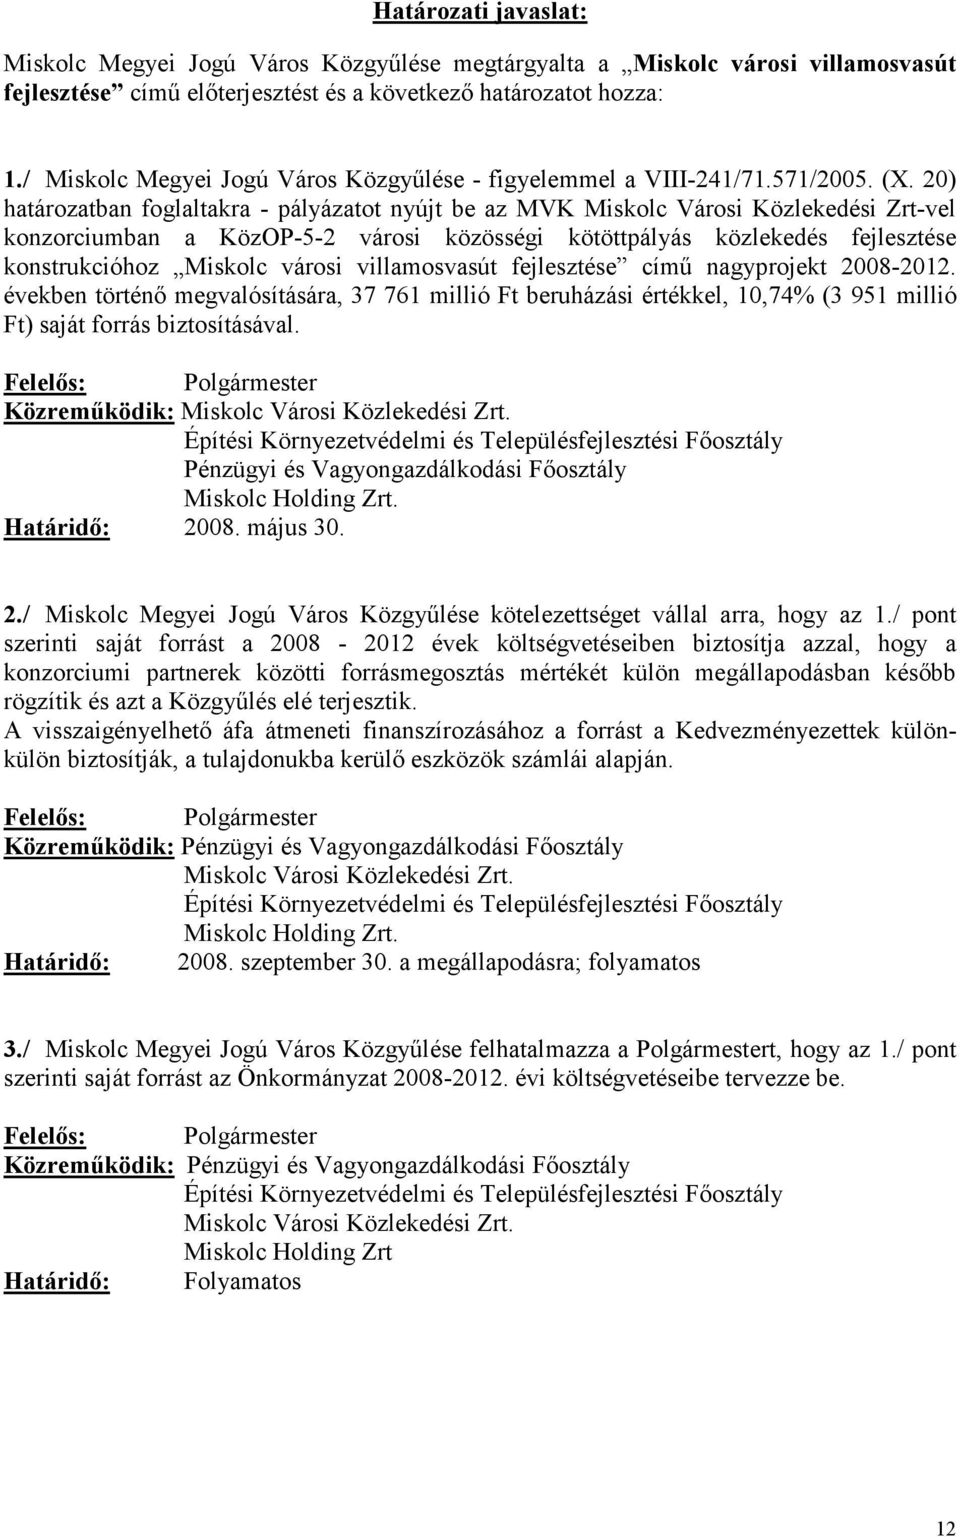 20) határozatban foglaltakra - pályázatot nyújt be az MVK Miskolc Városi Közlekedési Zrt-vel konzorciumban a KözOP-5-2 városi közösségi kötöttpályás közlekedés fejlesztése konstrukcióhoz Miskolc